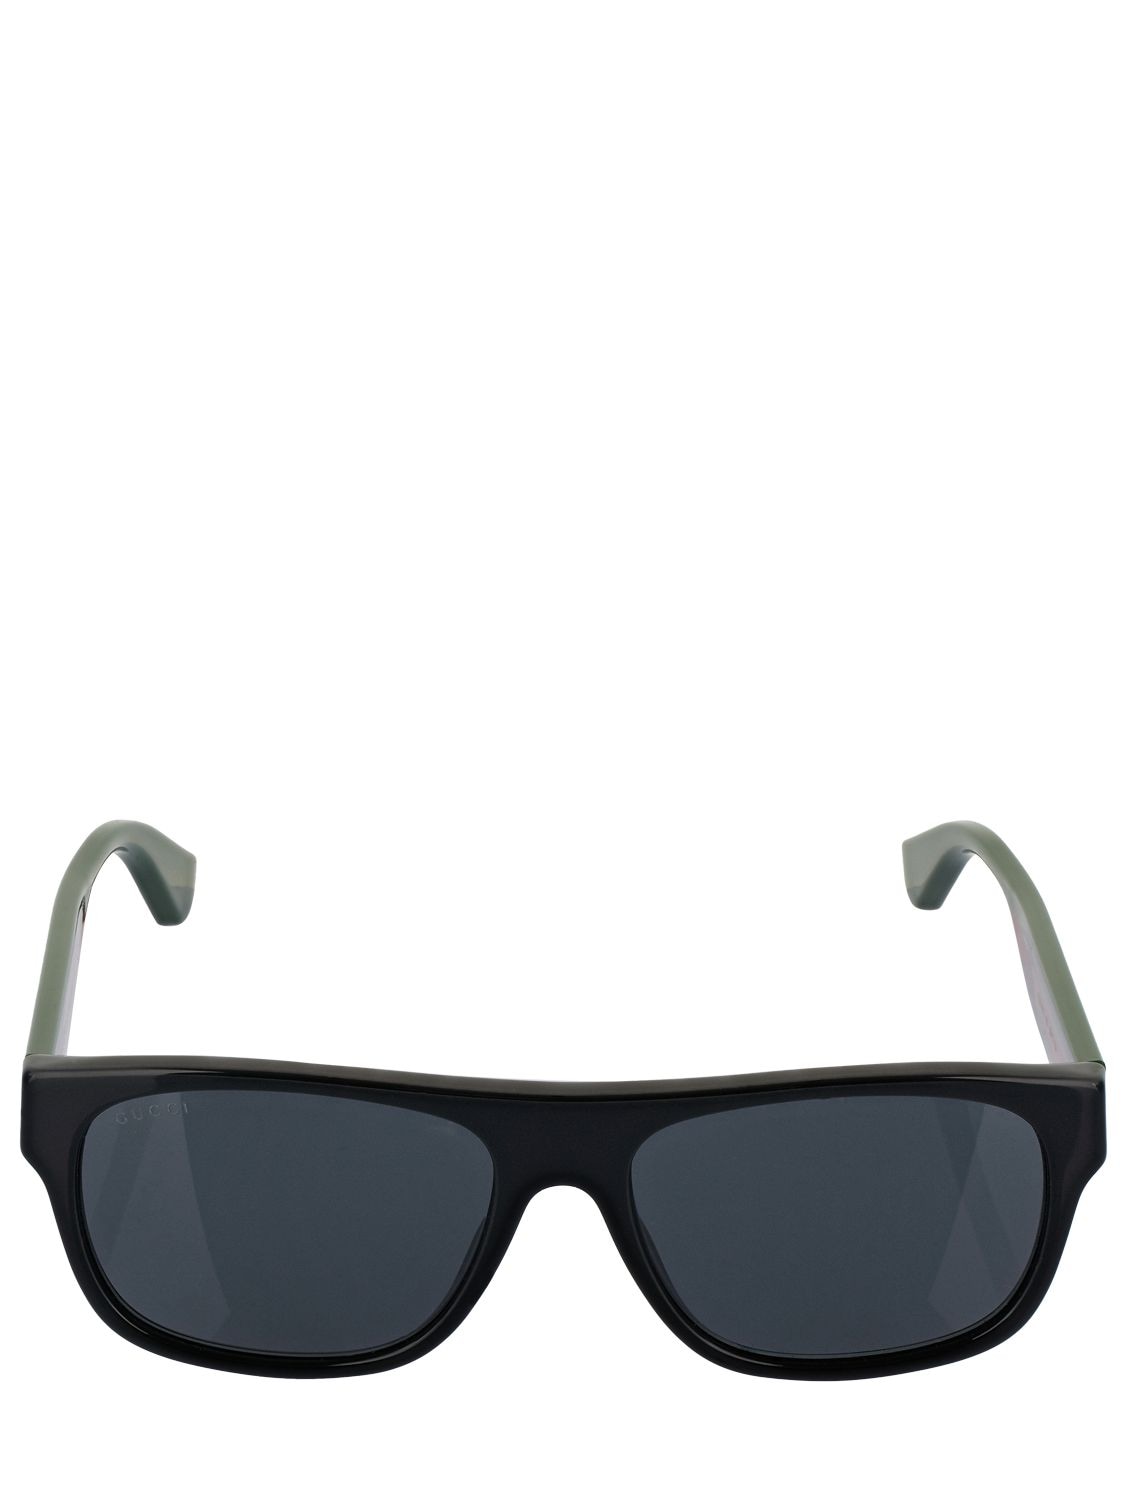 gucci gg0341s sunglasses